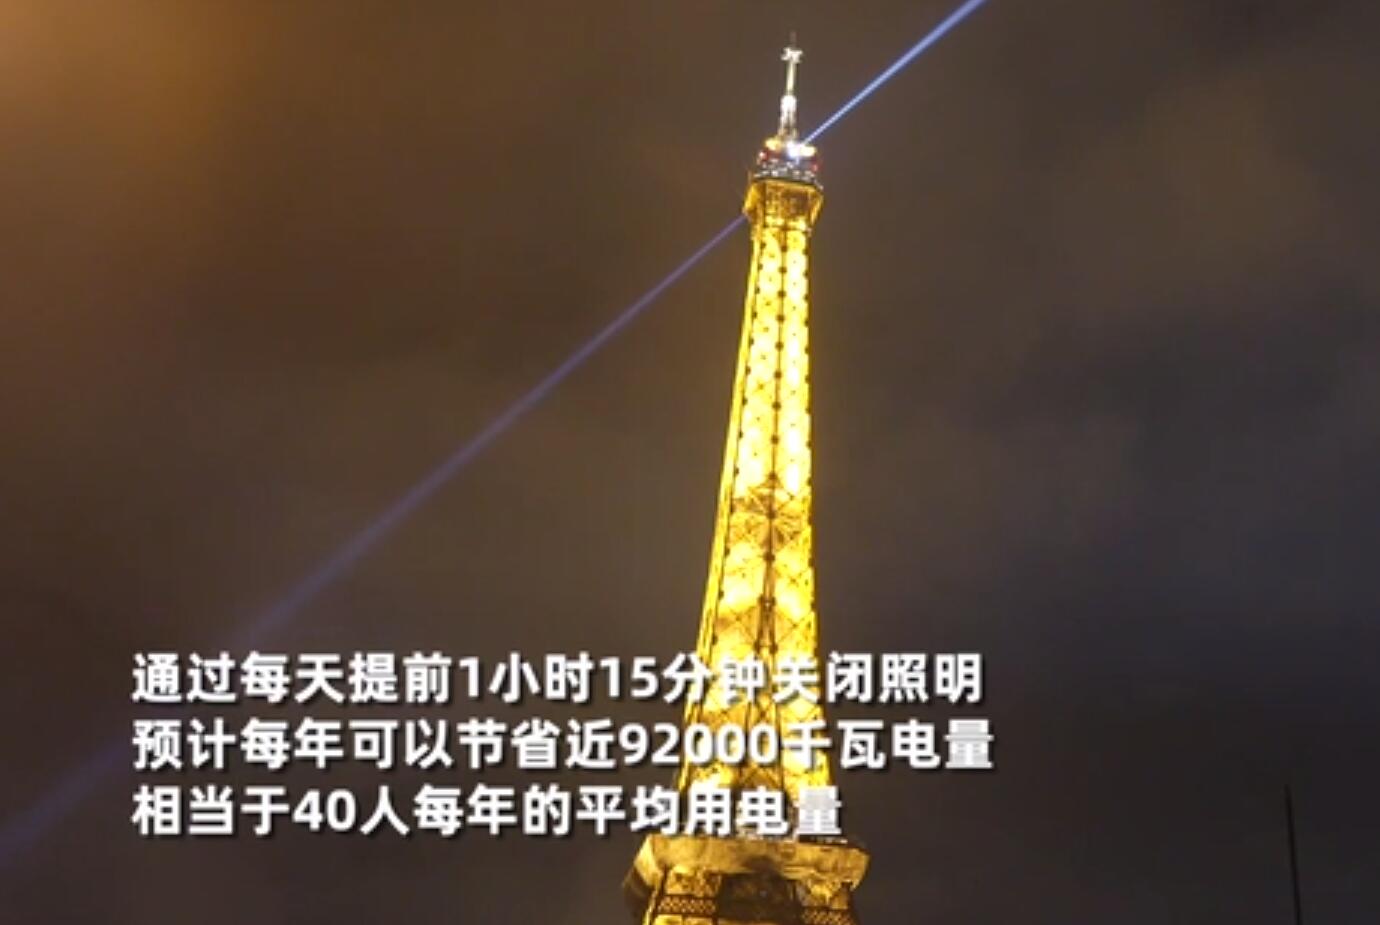 为节约能源 巴黎埃菲尔铁塔提前熄灯